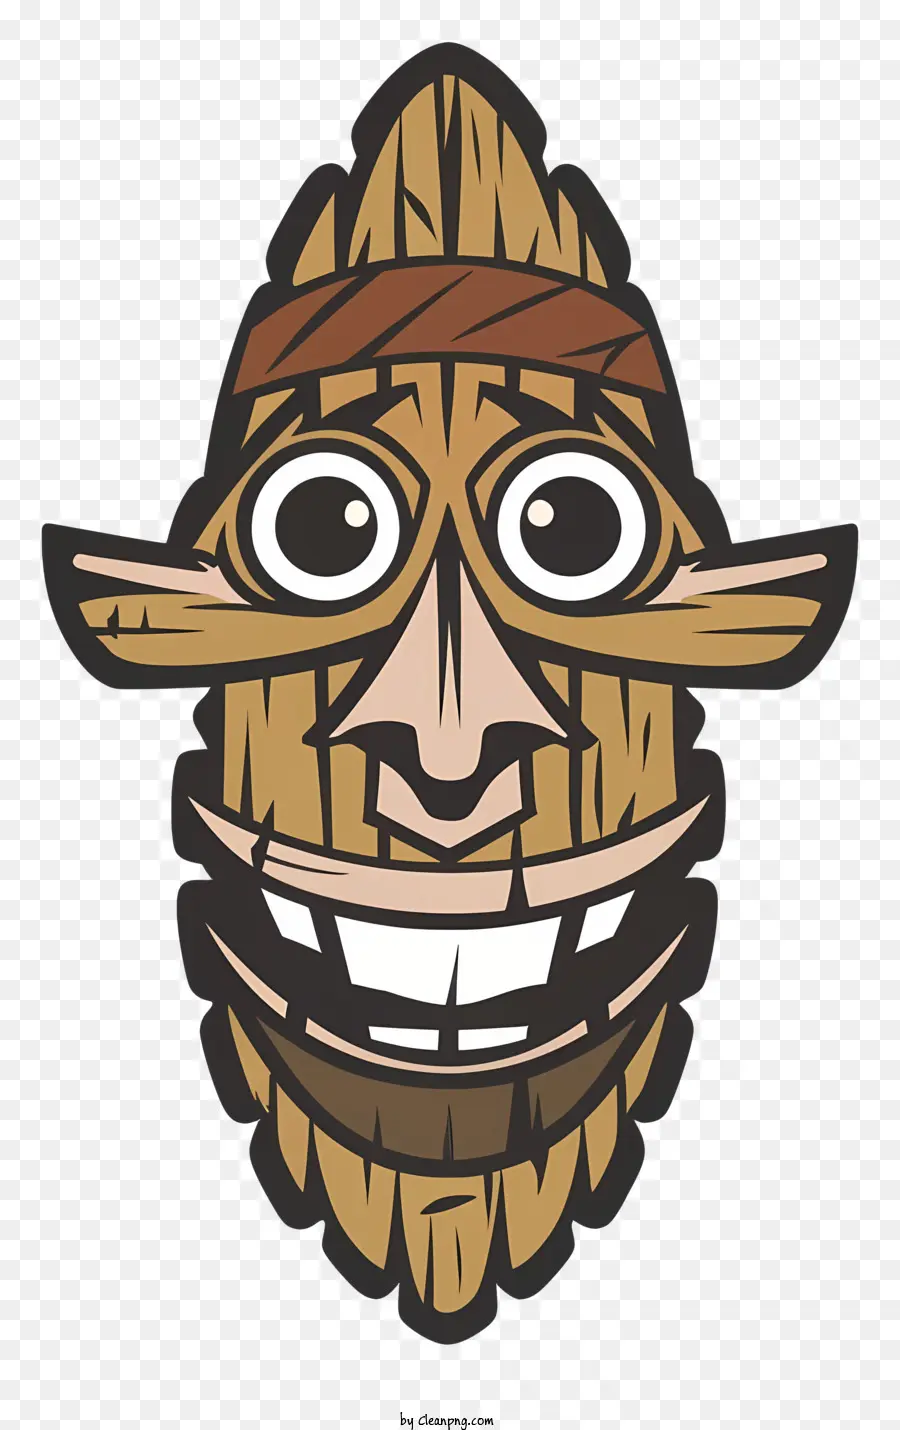 Carattere di cartone animato Maschera di legno sorridente A largo ghigliottino della fascia fatta di foglie chiuse - Carattere di maschera in legno cartoni animati con espressione felice